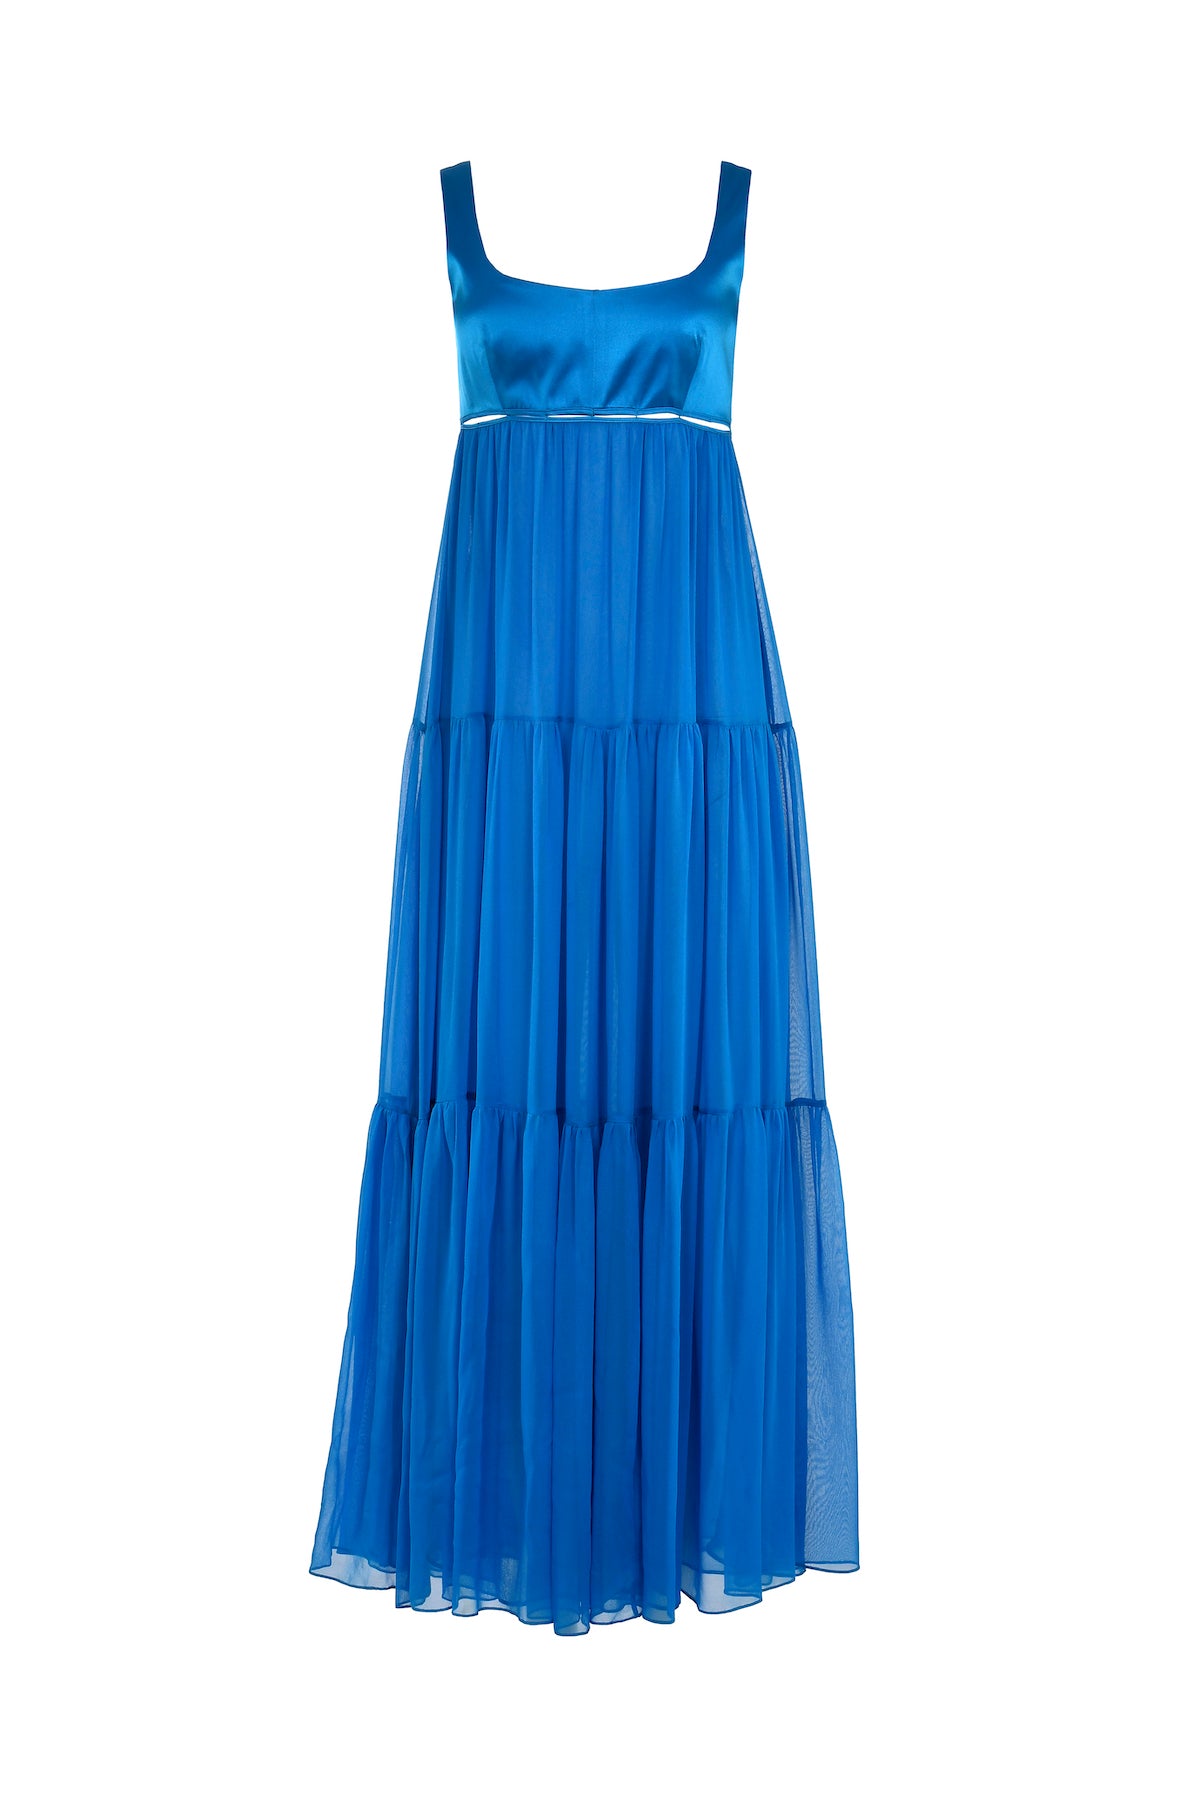 Cala Violina Dress - Cielo Azul